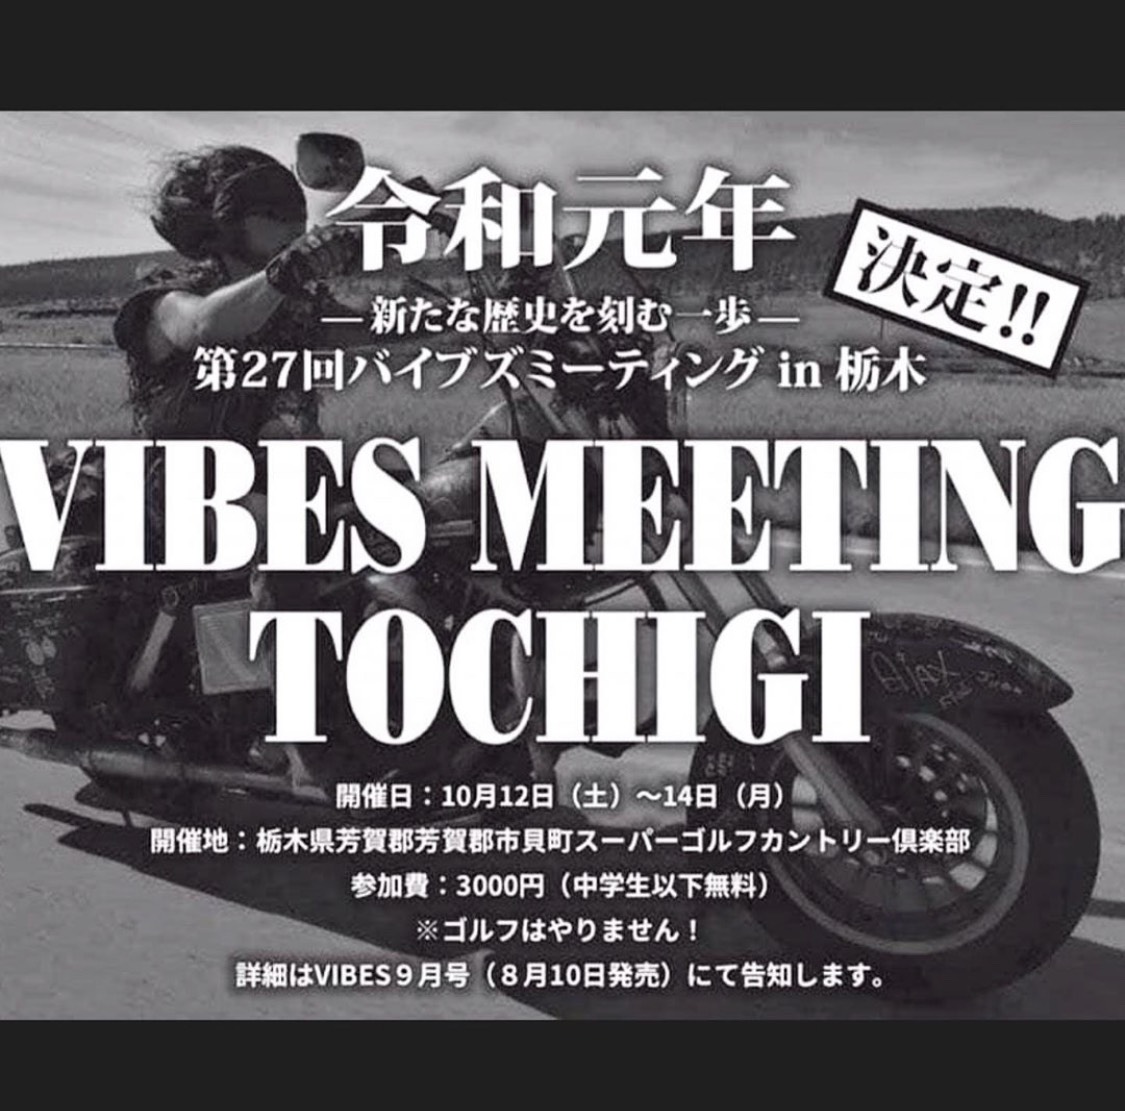 VIBES MEETING TOCHIGI